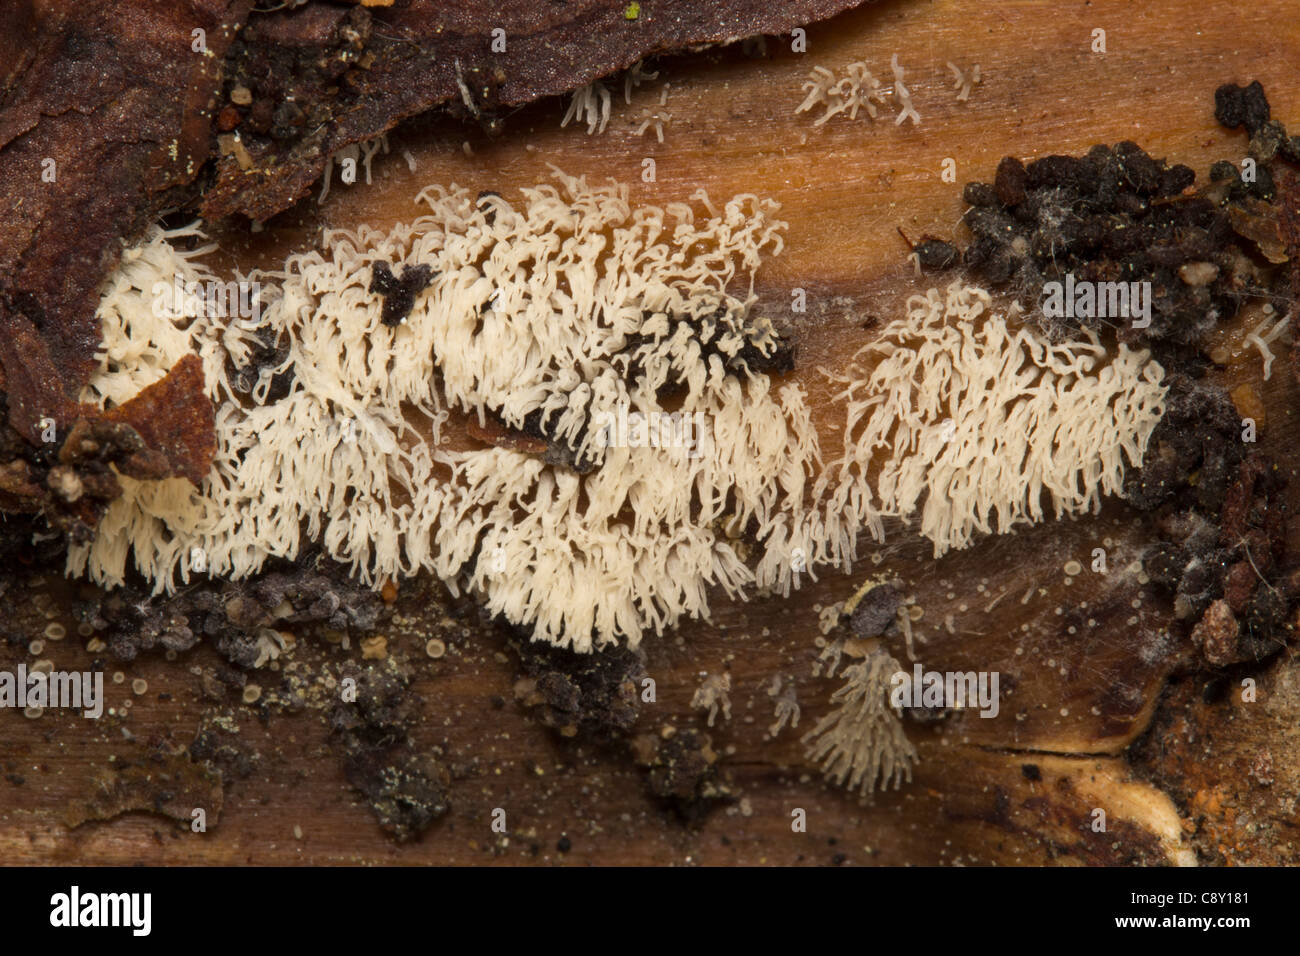 Coral slime (Ceratiomyxa fruticulosa) fungo Foto Stock